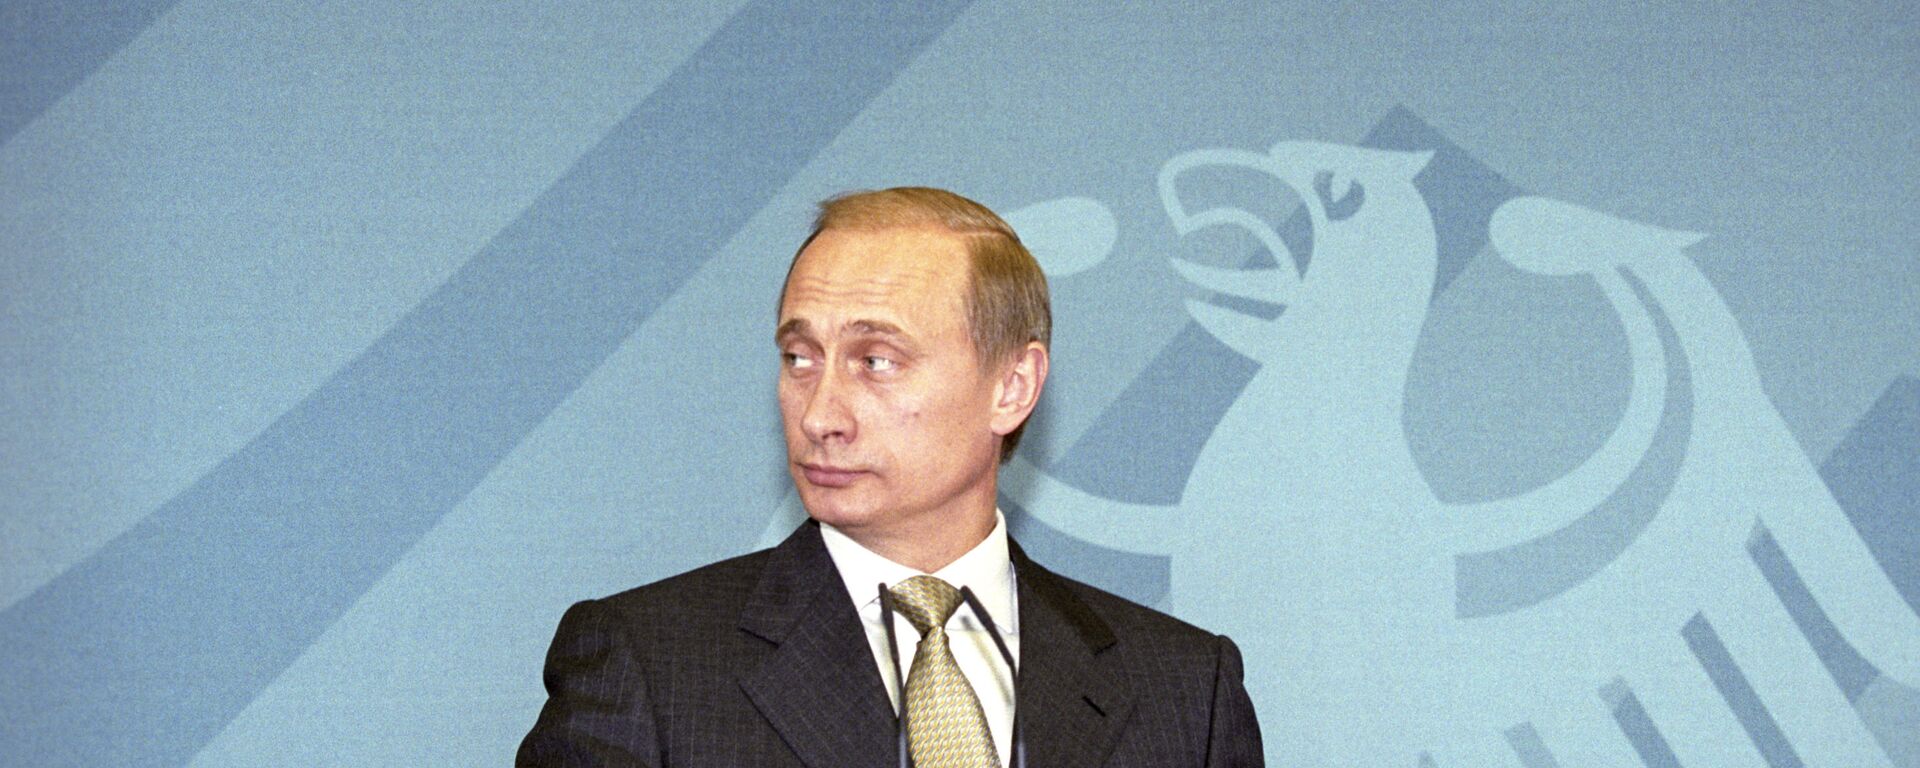 Президент РФ Владимир Путин во время визита в Германию, 2000 год - Sputnik Việt Nam, 1920, 05.11.2021